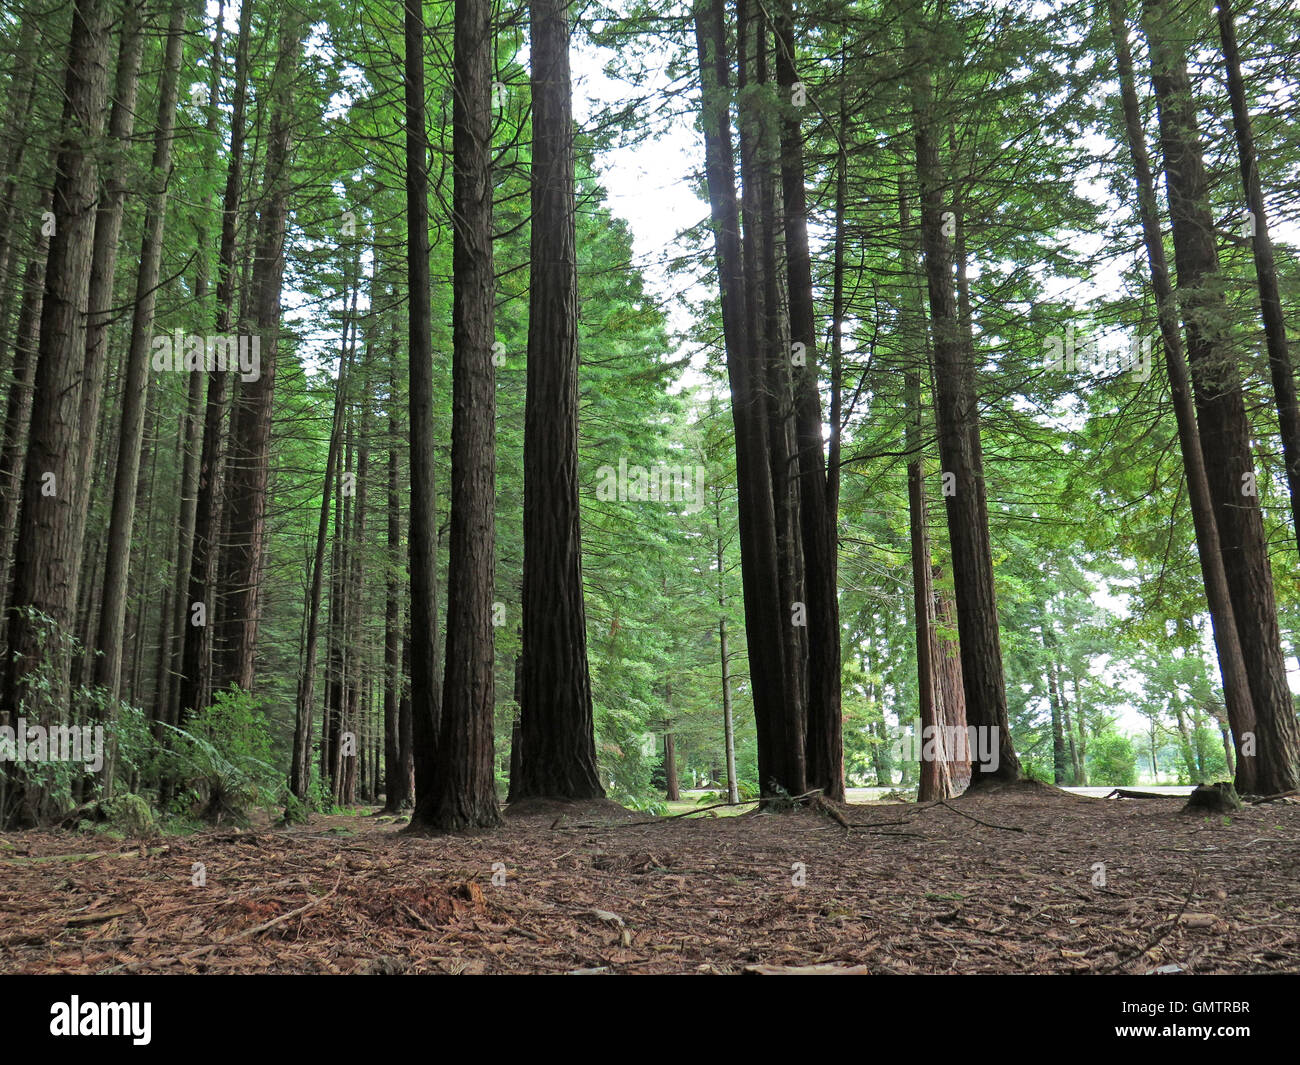 Forêt de redwoods Whakarewarewa californien à à Rotorua, île du Nord NZ Banque D'Images